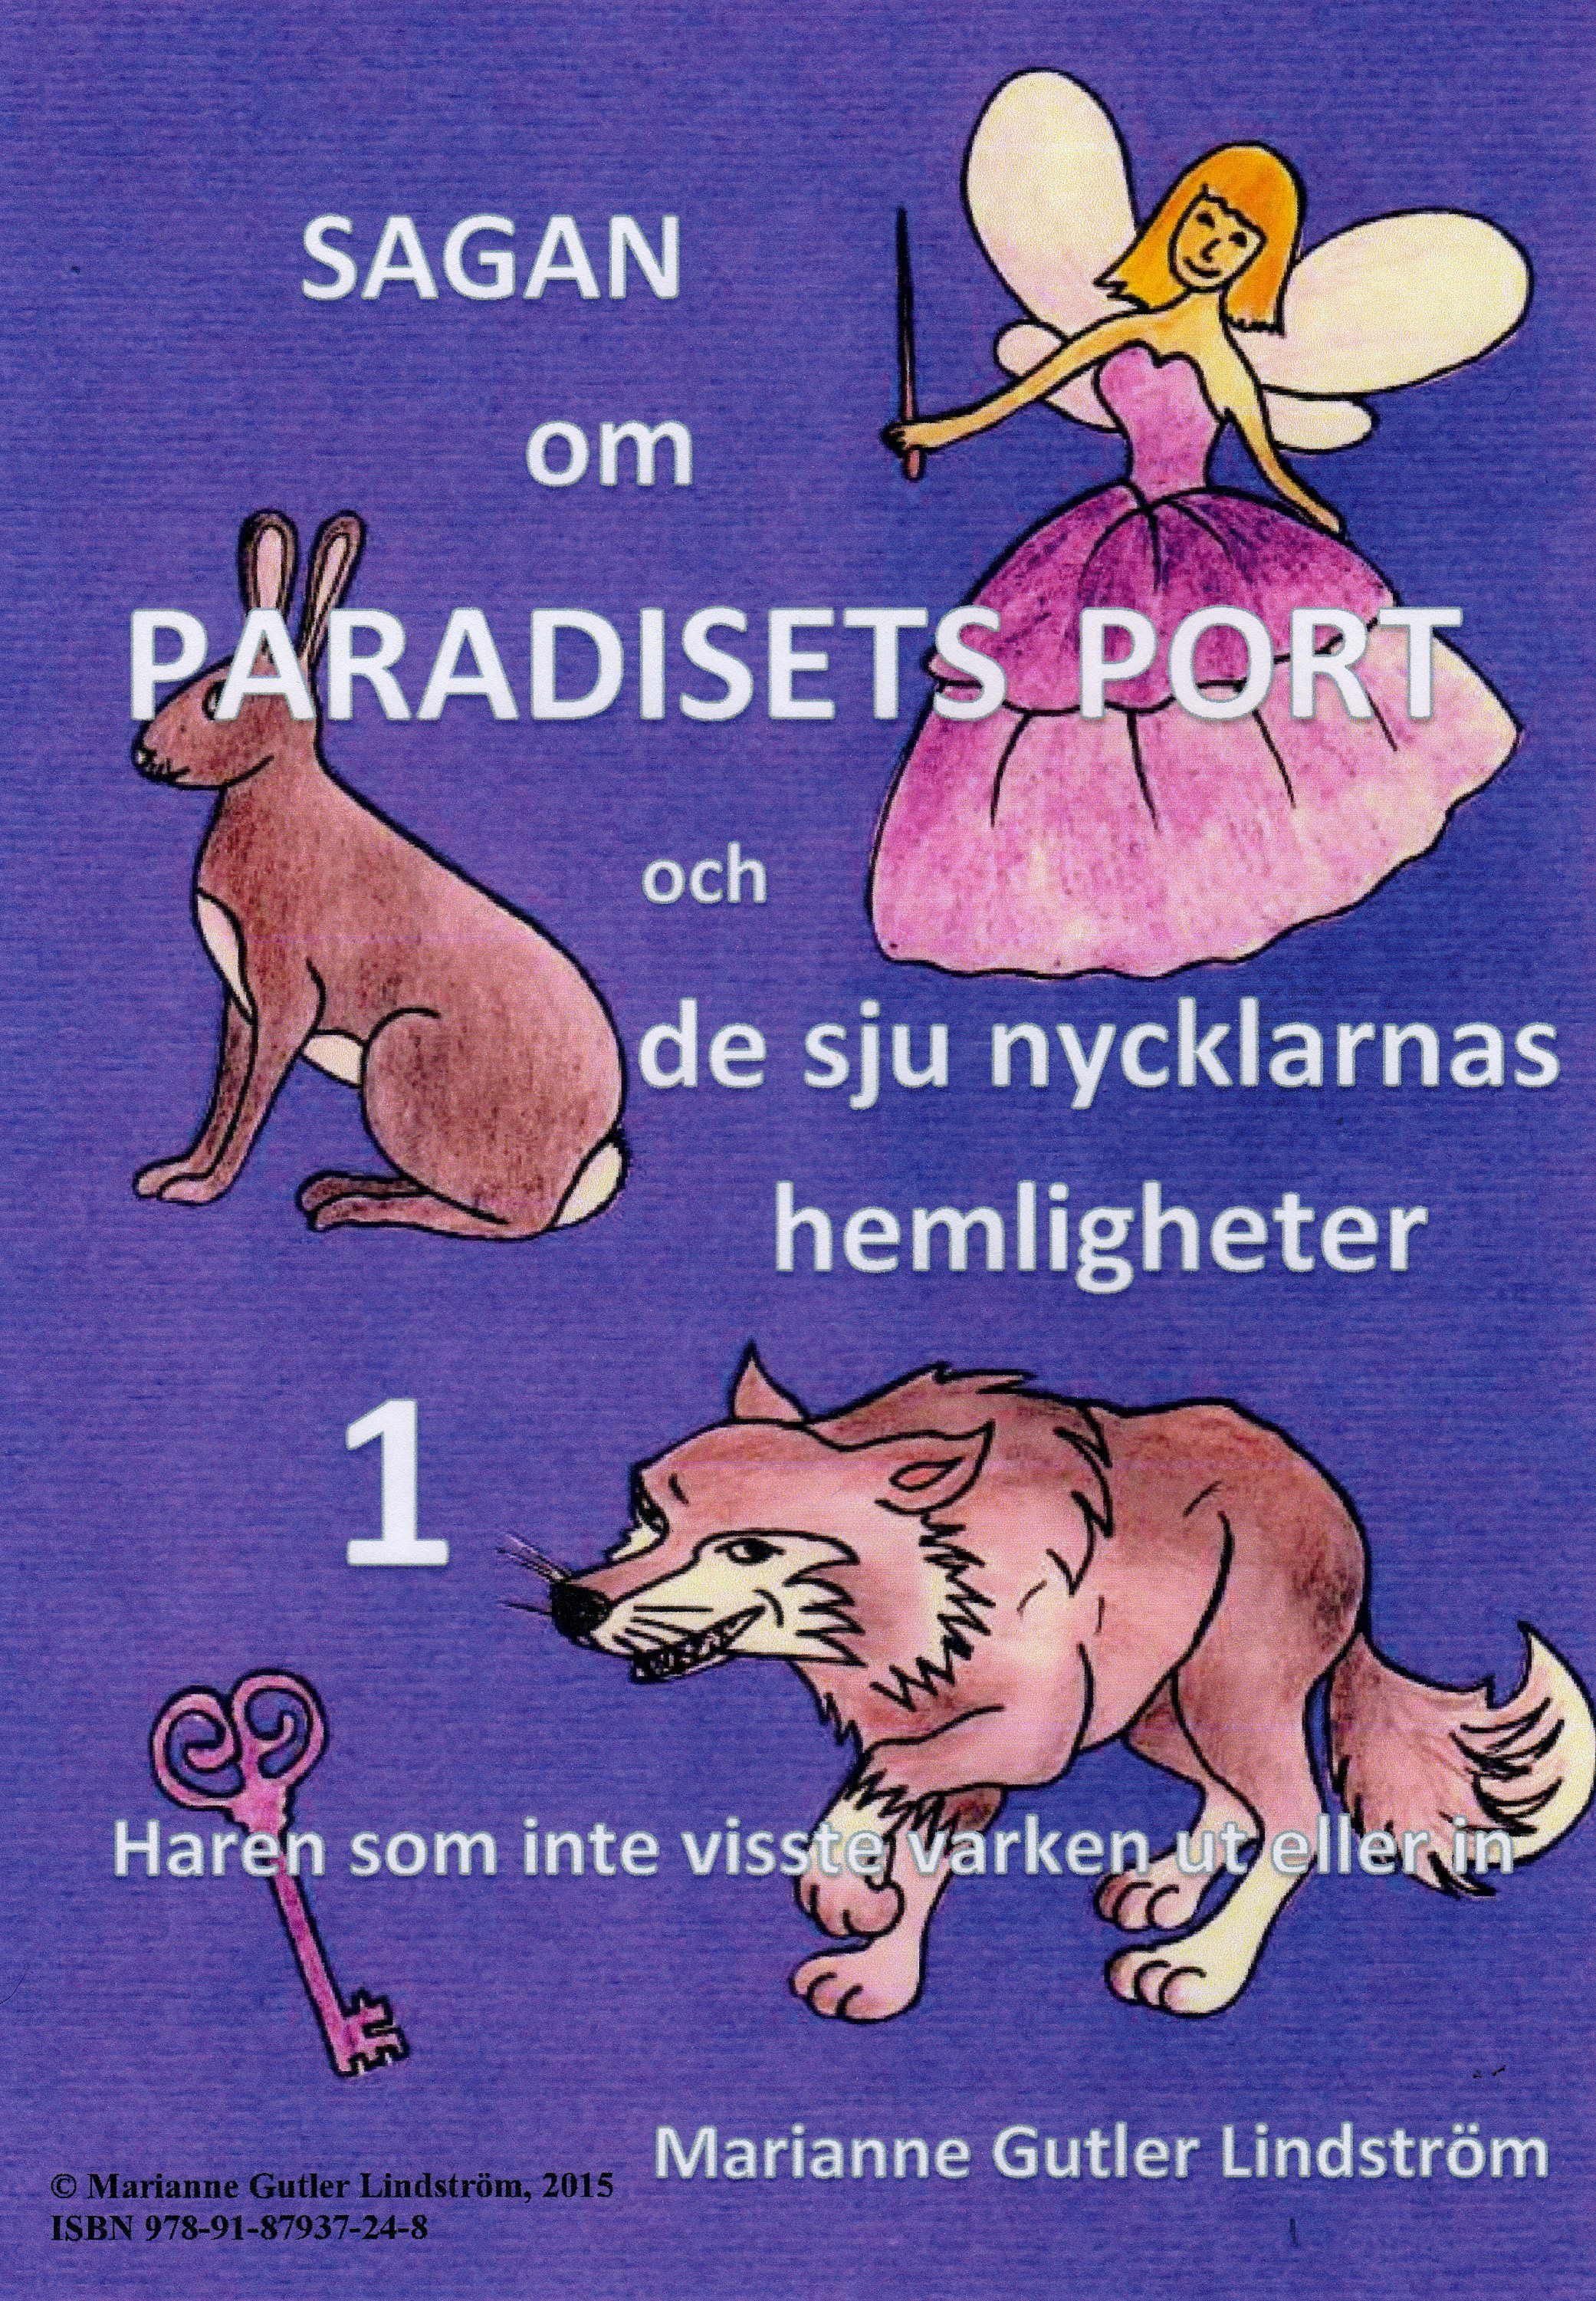 Sagan om Paradisets port 1 Haren som inte visste varken ut eller in, e-bog af Marianne Gutler Lindström